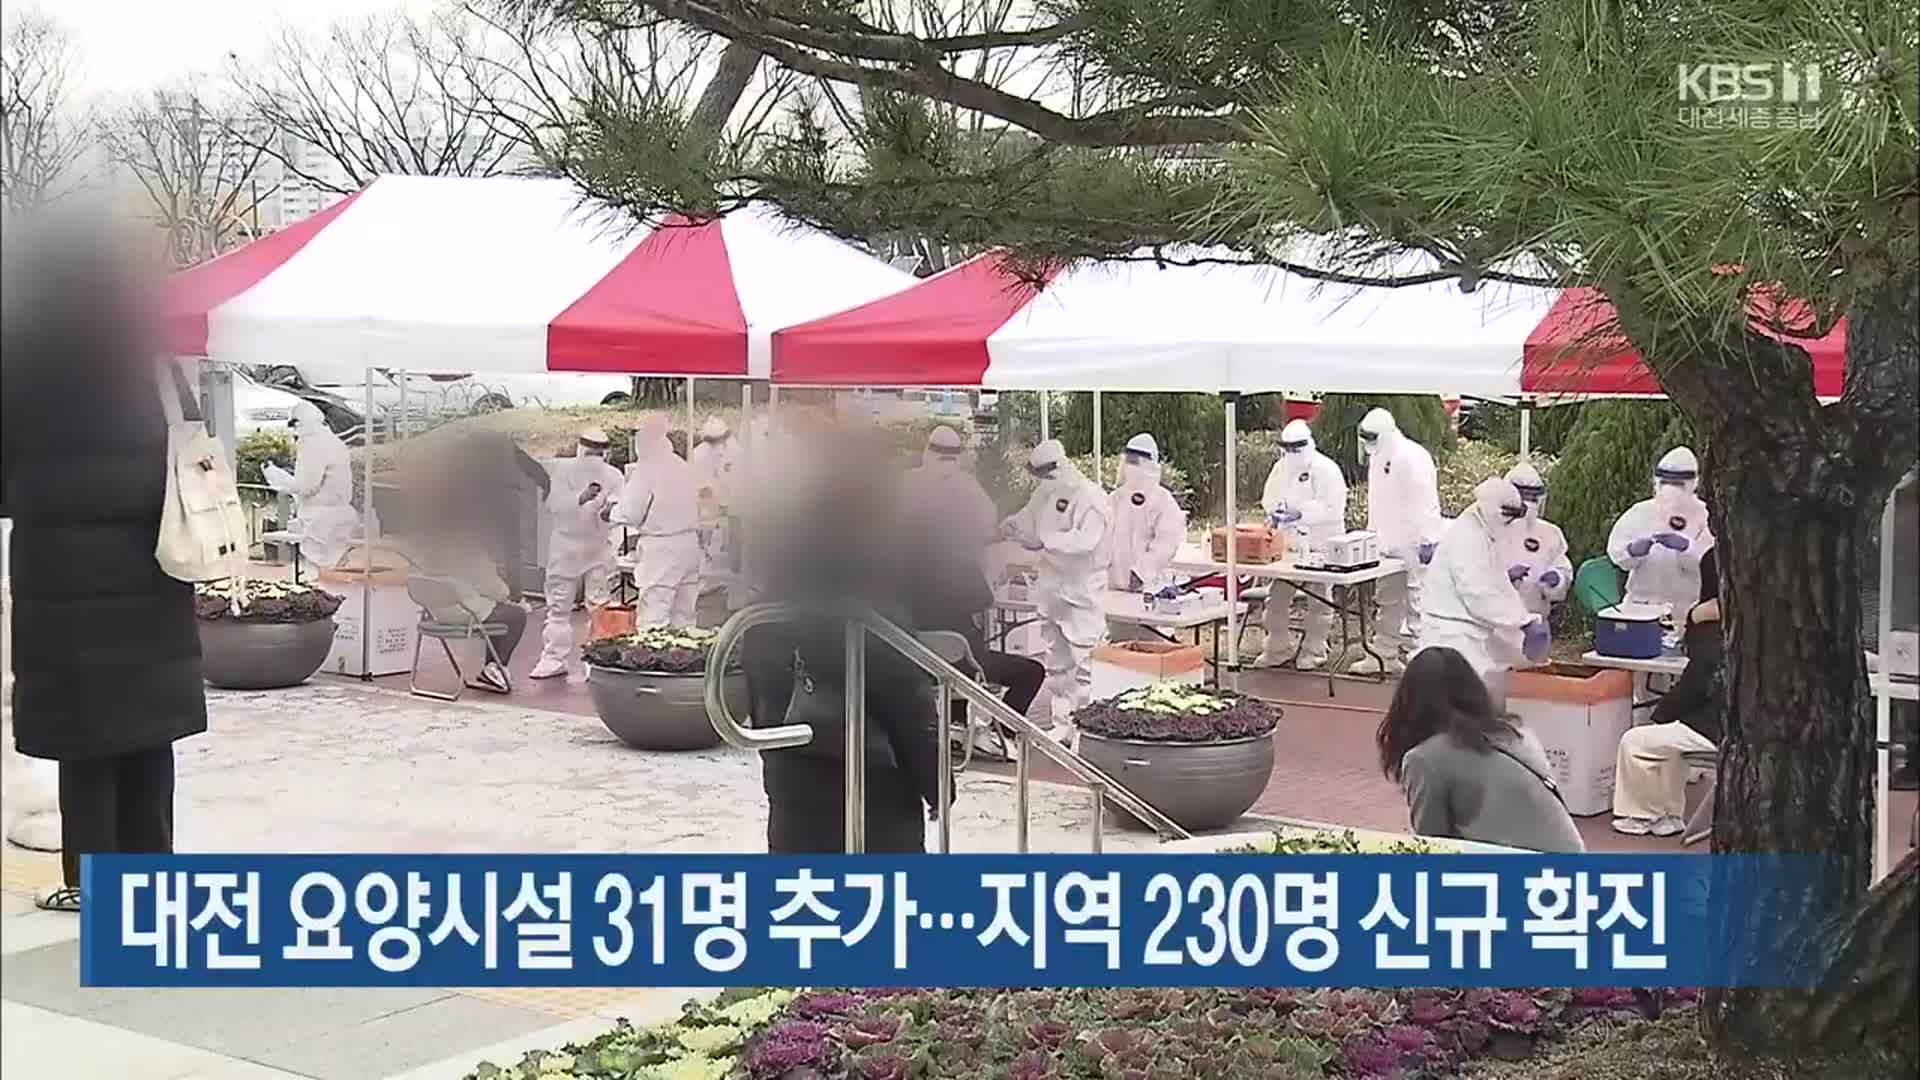 대전 요양시설 31명 추가…대전·세종·충남 230명 신규 확진